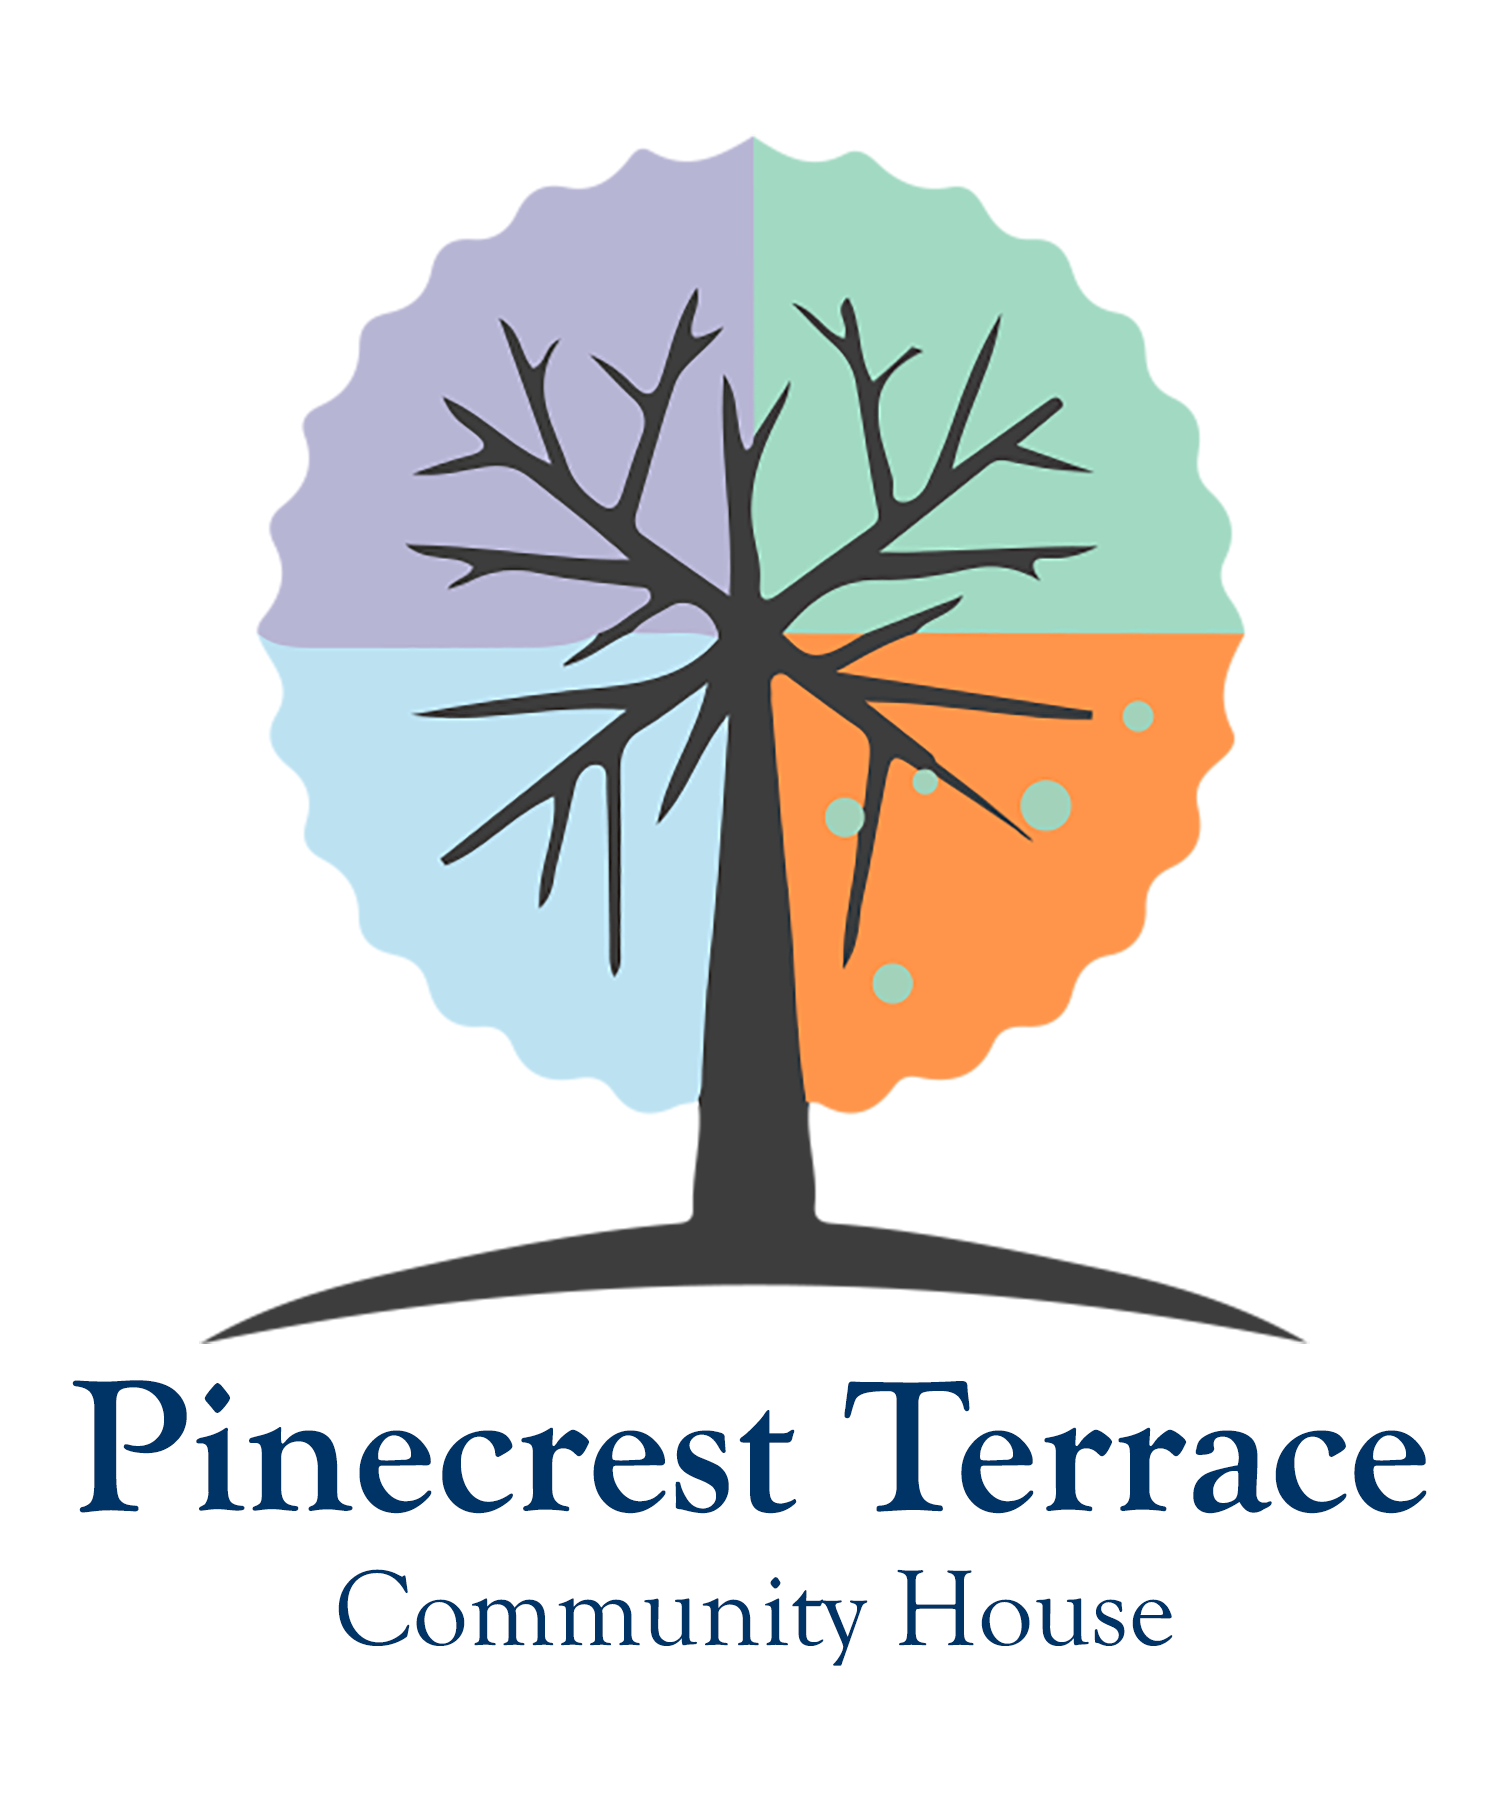 Pinecrest Terrace Community House